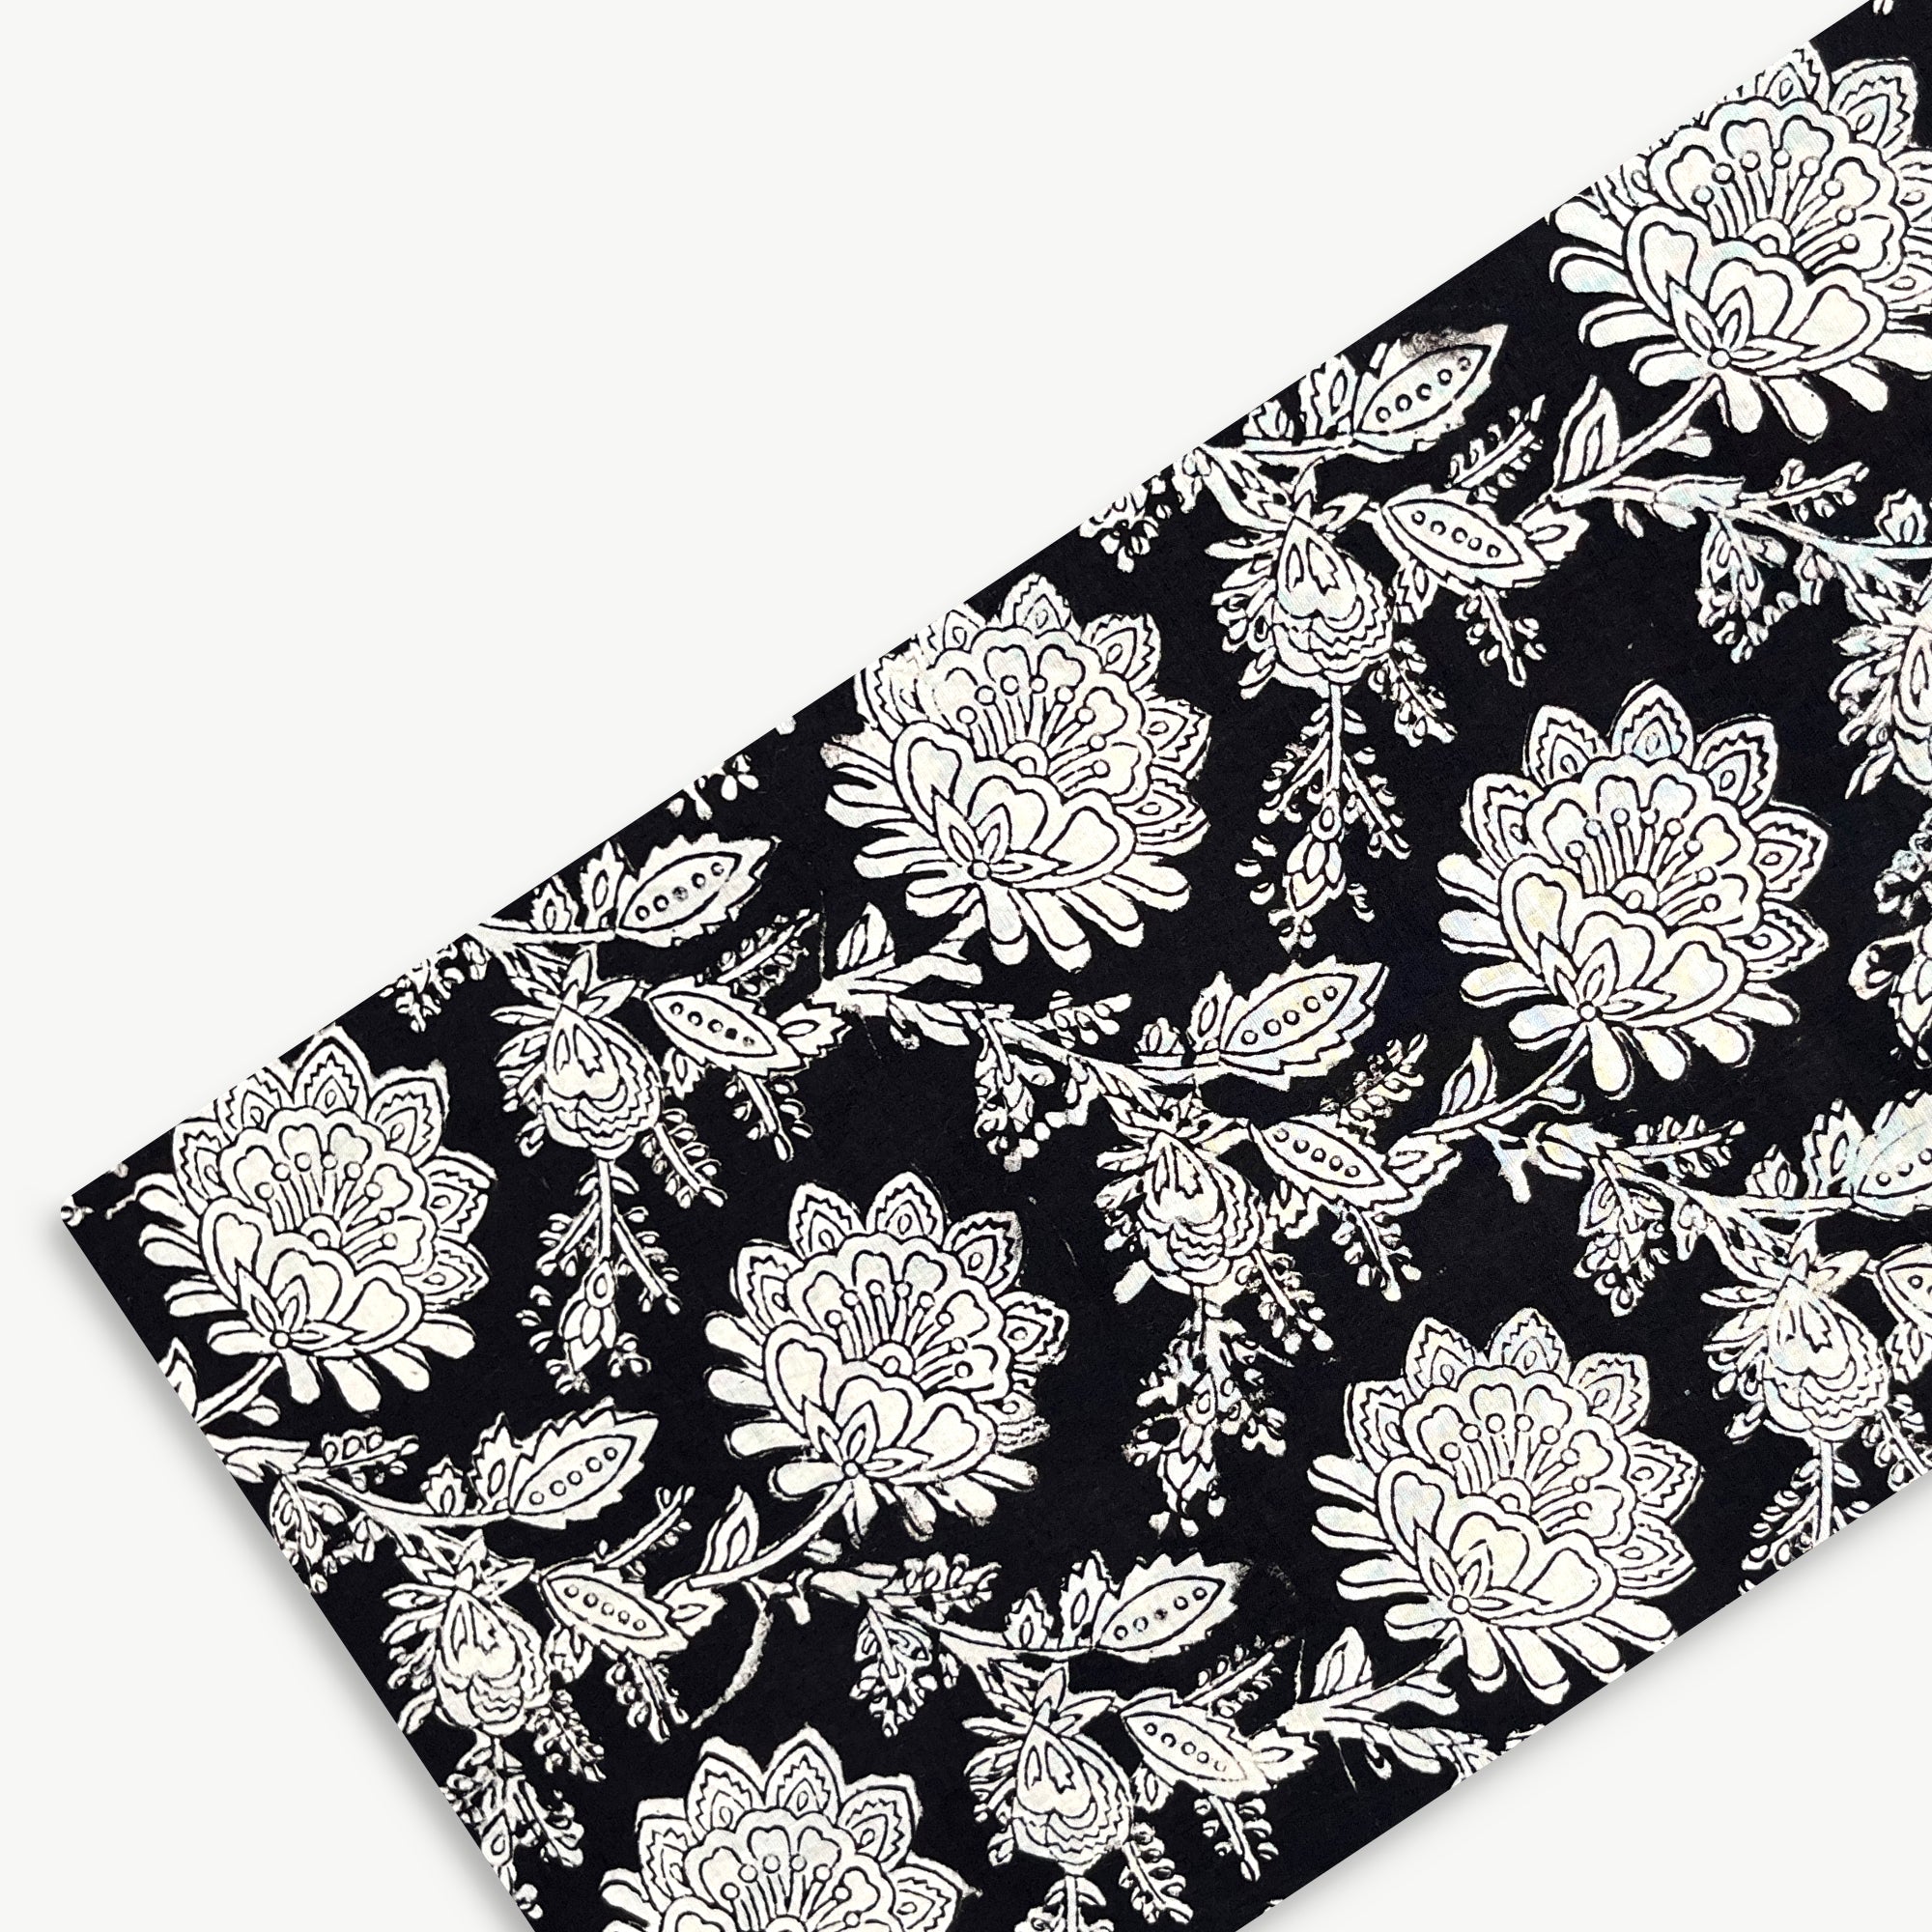 Black Floral Jaal Bagru Hand Block Printed Cotton Fabric